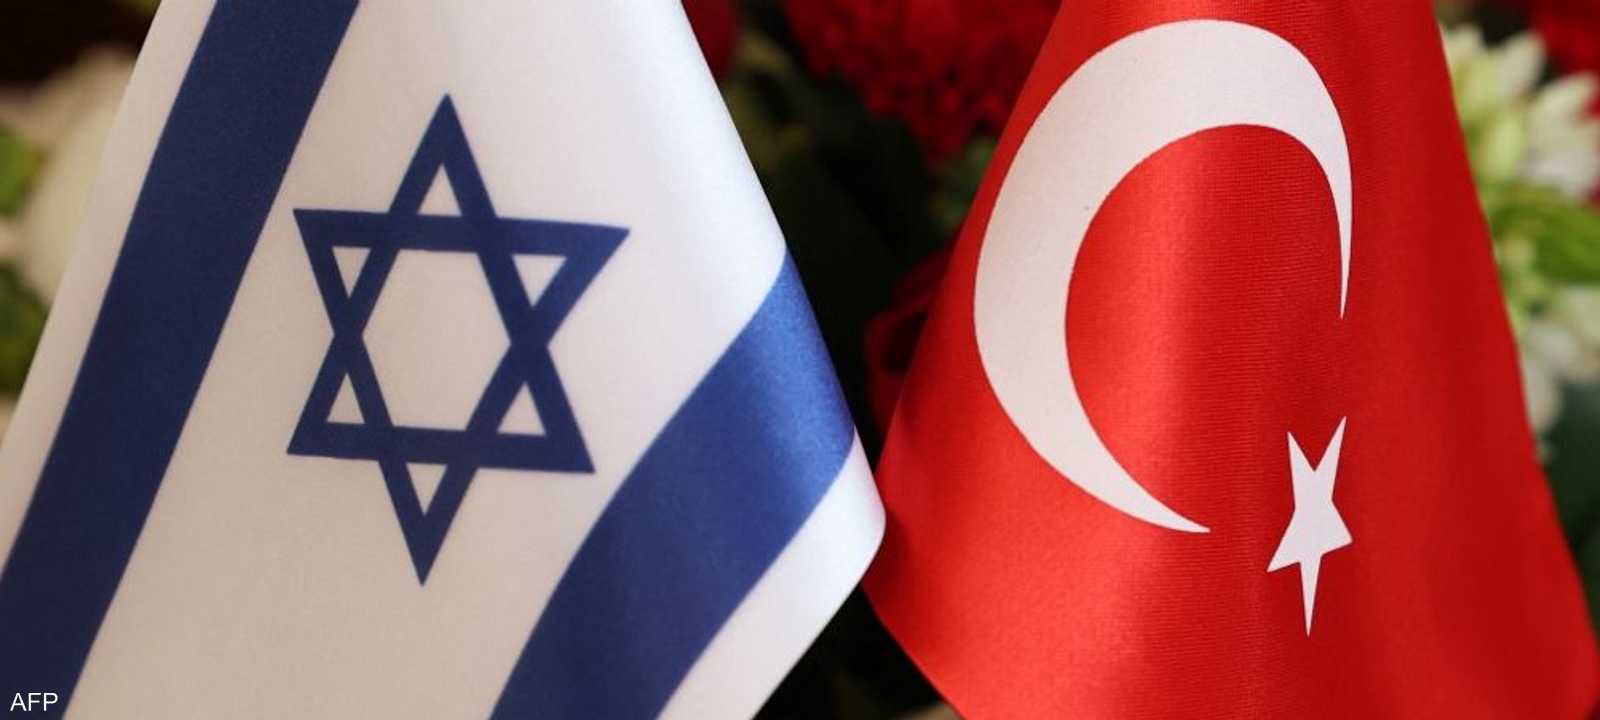 إسرائيل وتركيا